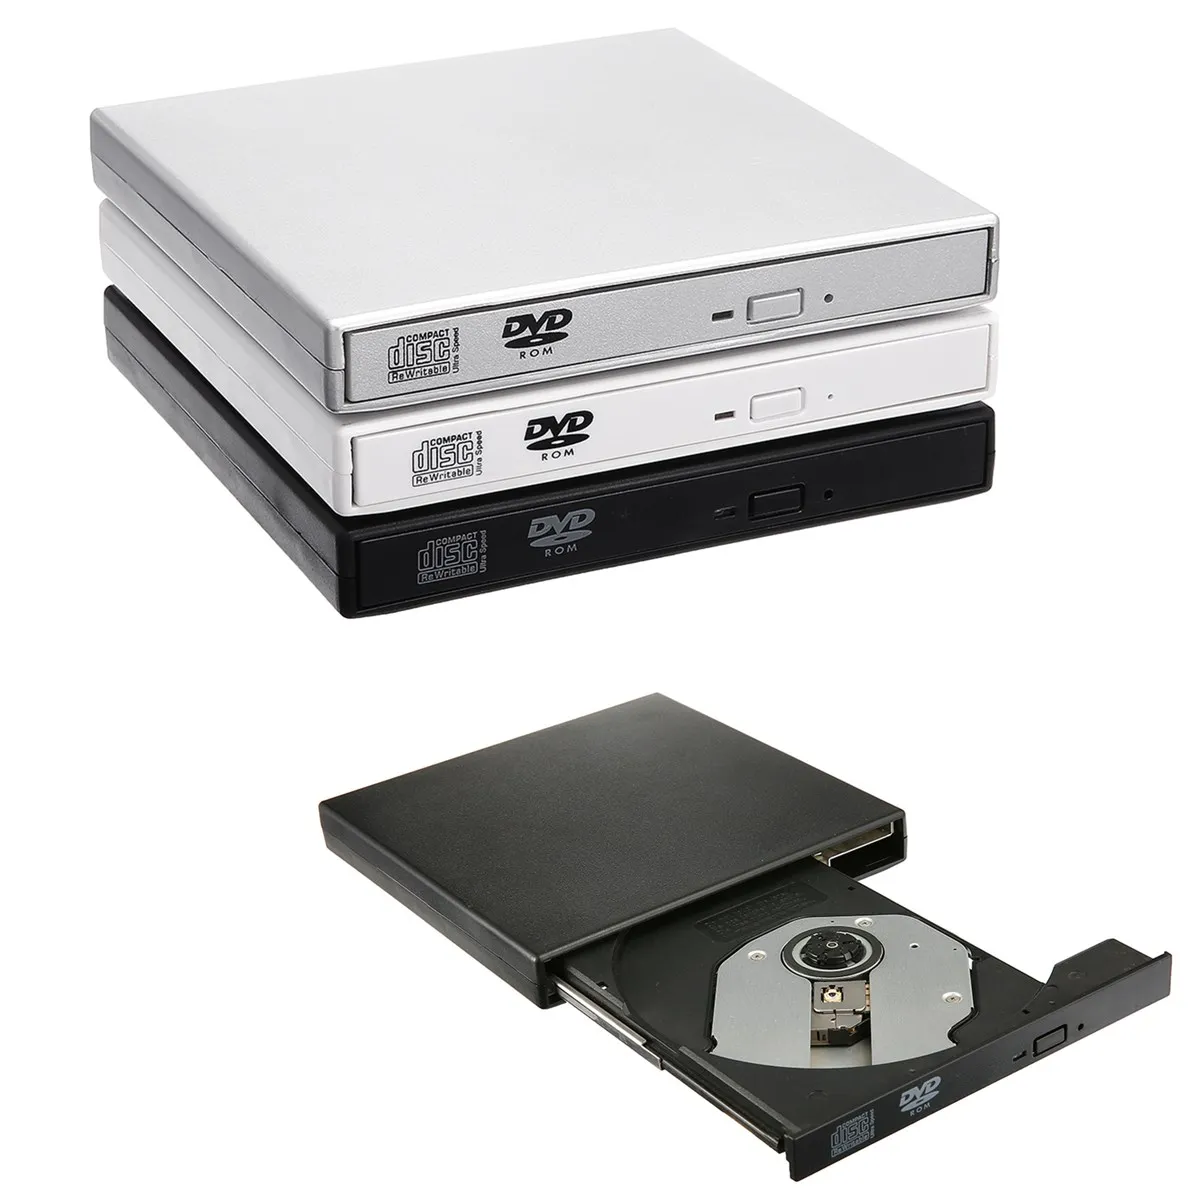 S SKYEE Внешний оптический привод Combo USB 2,0 компакт-дисков/DVD-ROM CD-RW плеер горелки Портативный считыватель Регистраторы для портативных ПК